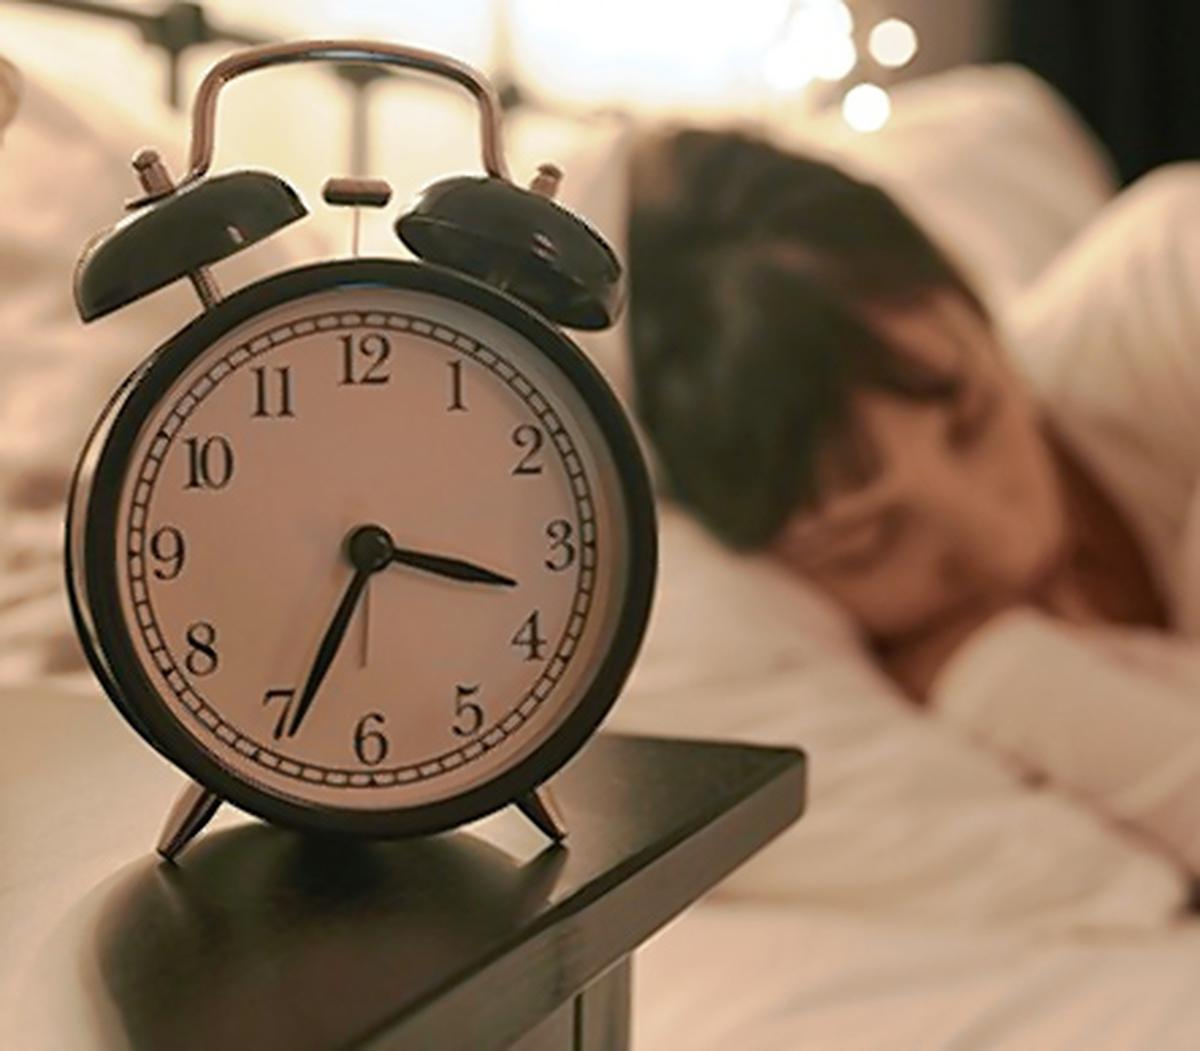 Les personnes qui dorment peu sont plus susceptibles de souffrir de règles irrégulières et abondantes